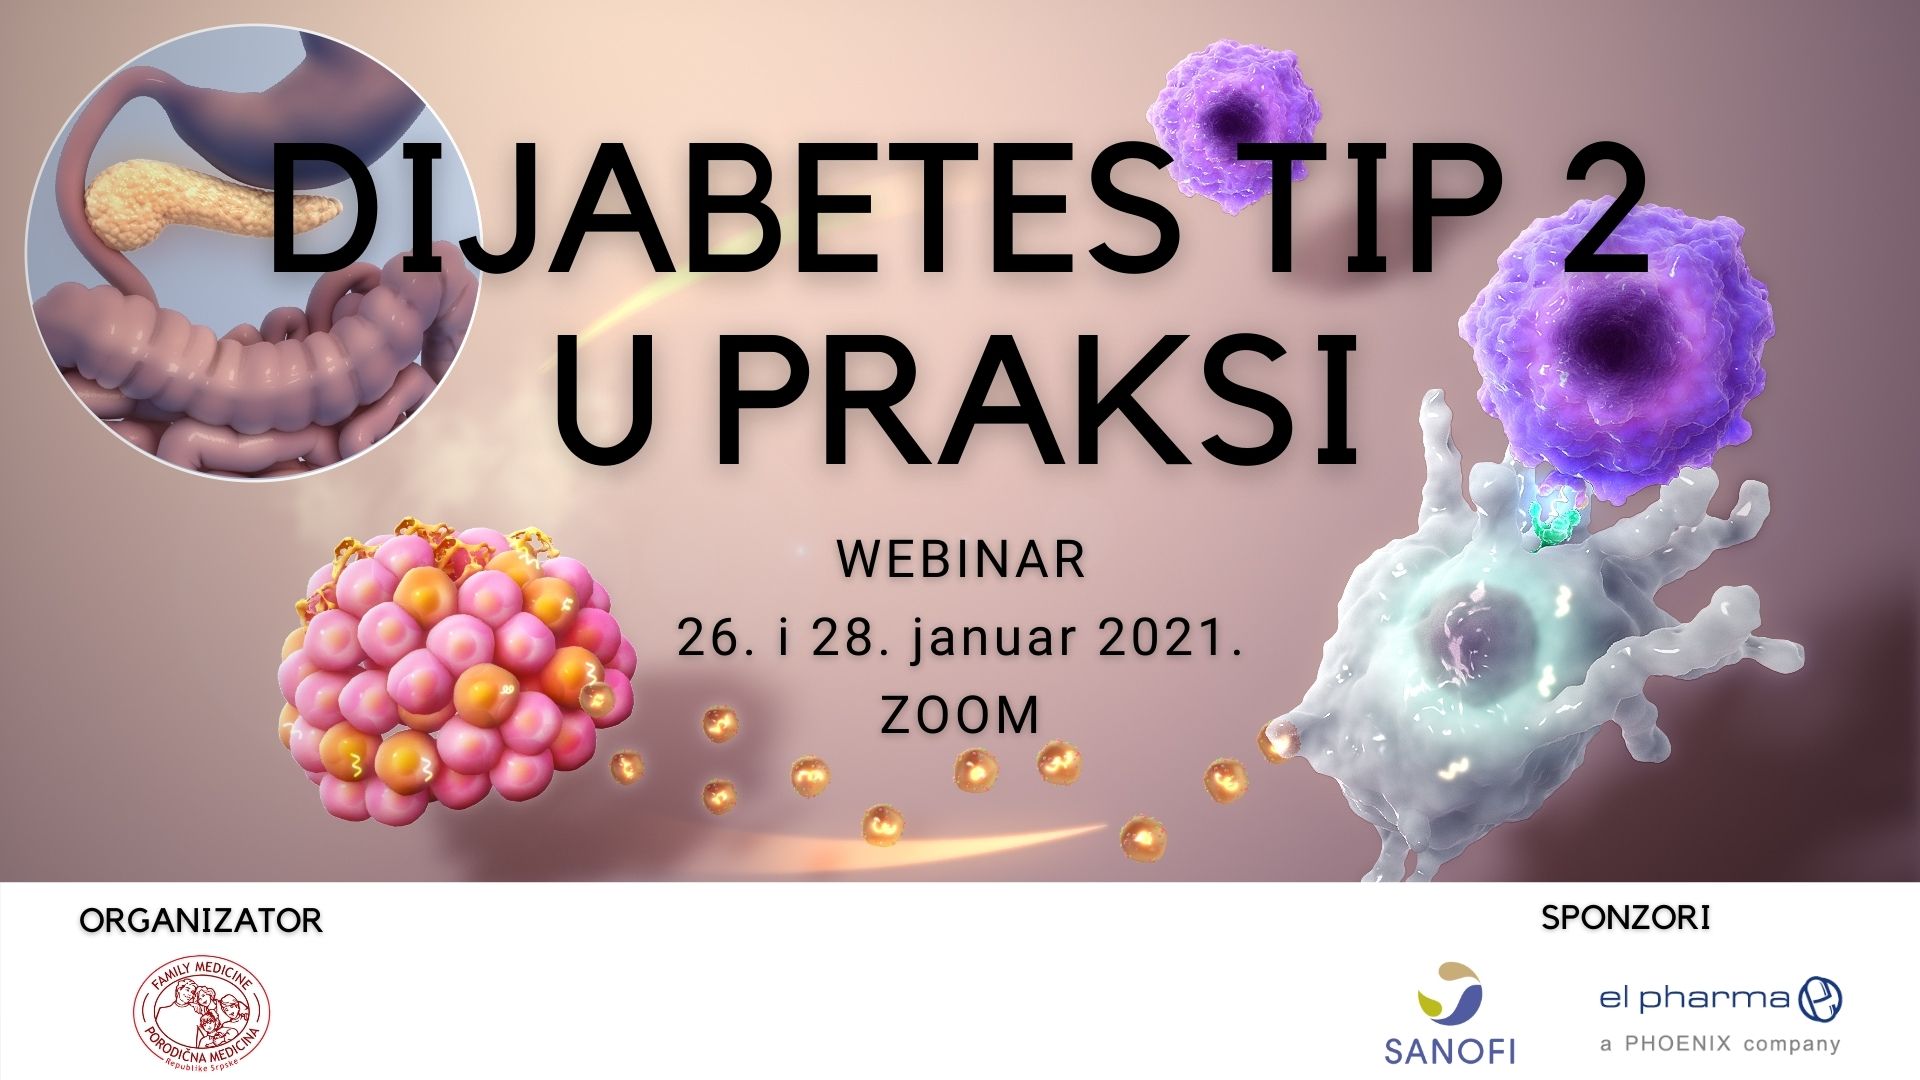 Dijabetes tip 2 u praksi